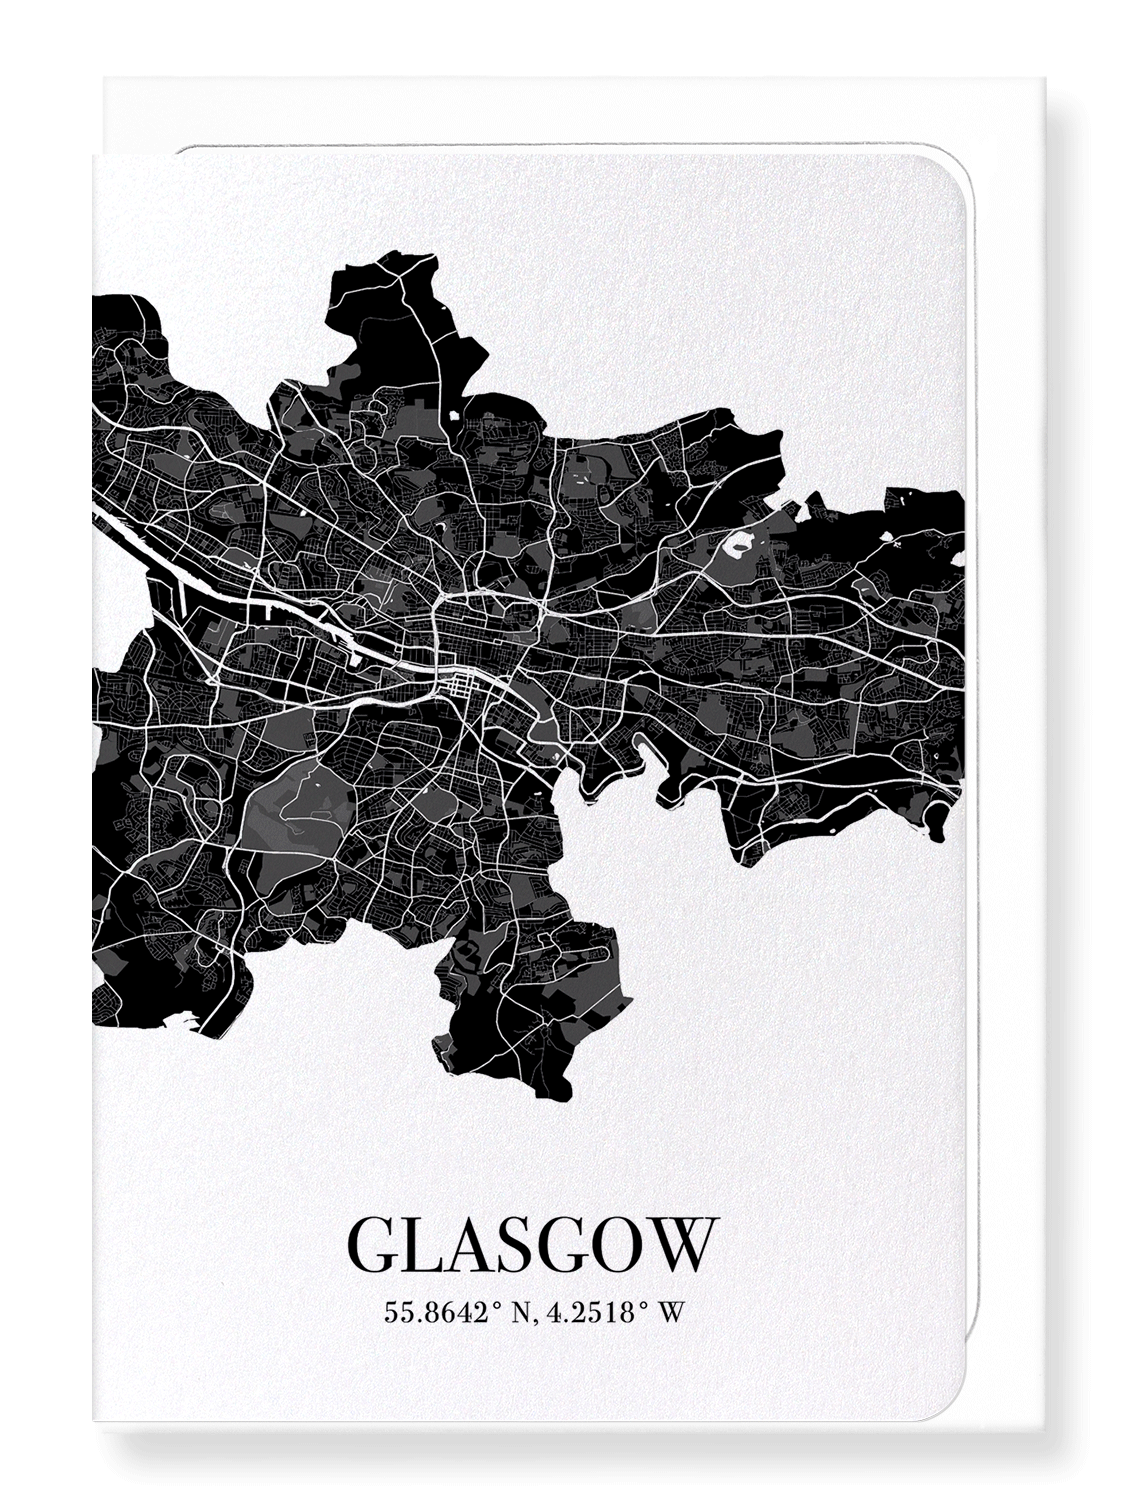 GLASGOW CUTOUT: Map Cutout Greeting Card